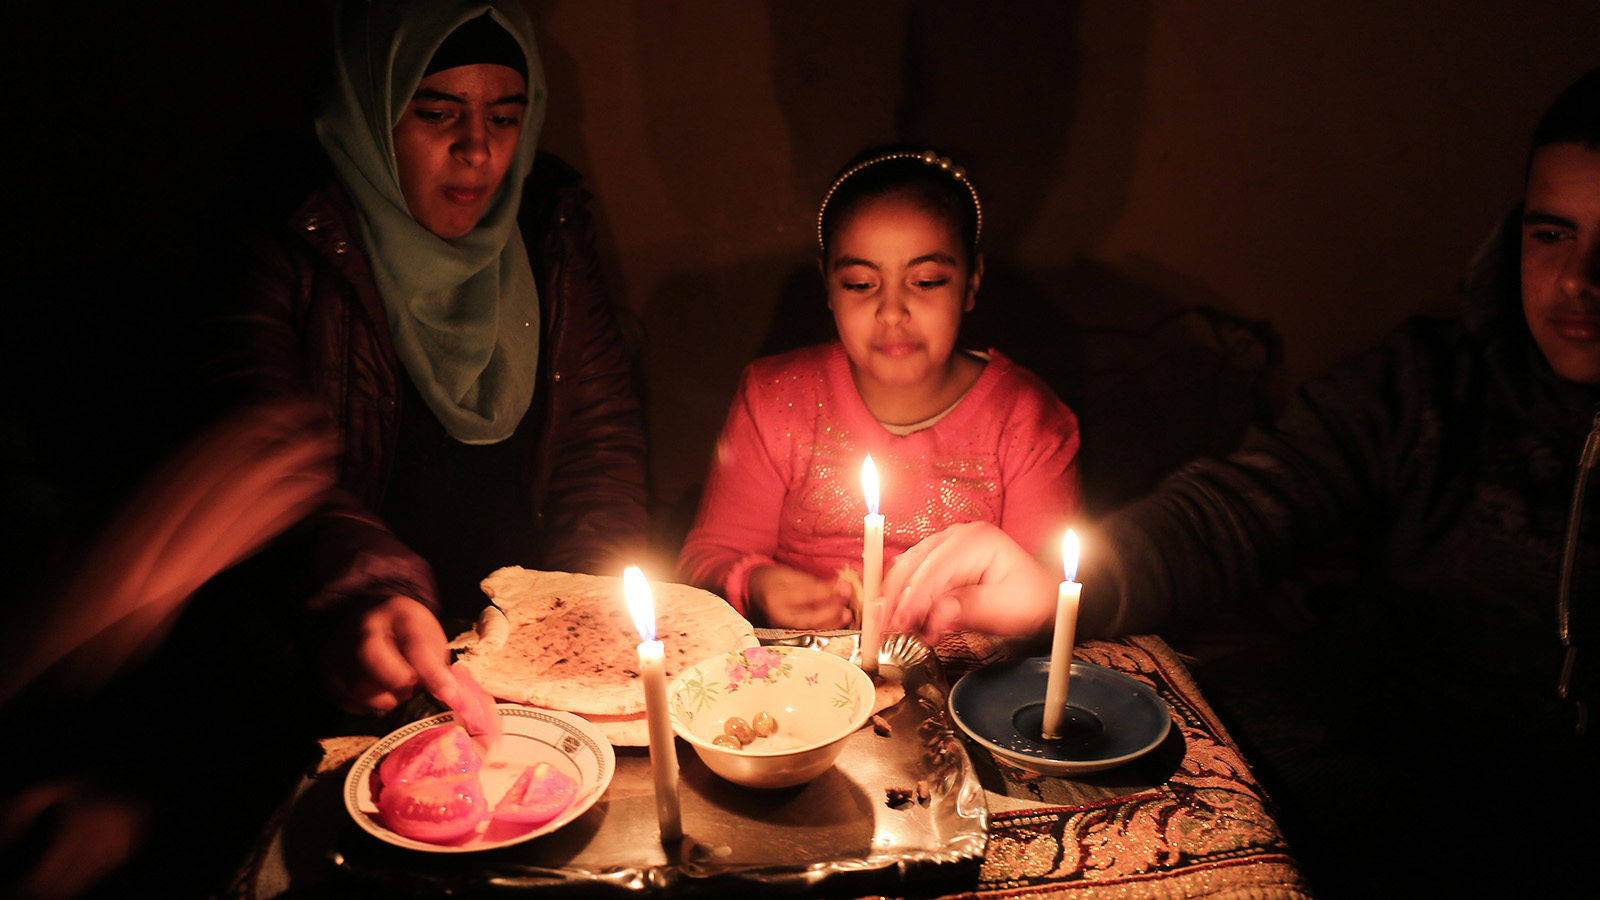 משפחה פלסטינית בארחות ערב לאור נרות בביתם במחנה הפליטים ברפיח, עקב מחסור בחשמל, 15 בפברואר 2018 ( Abed Rahim Khatib/ Flash90)